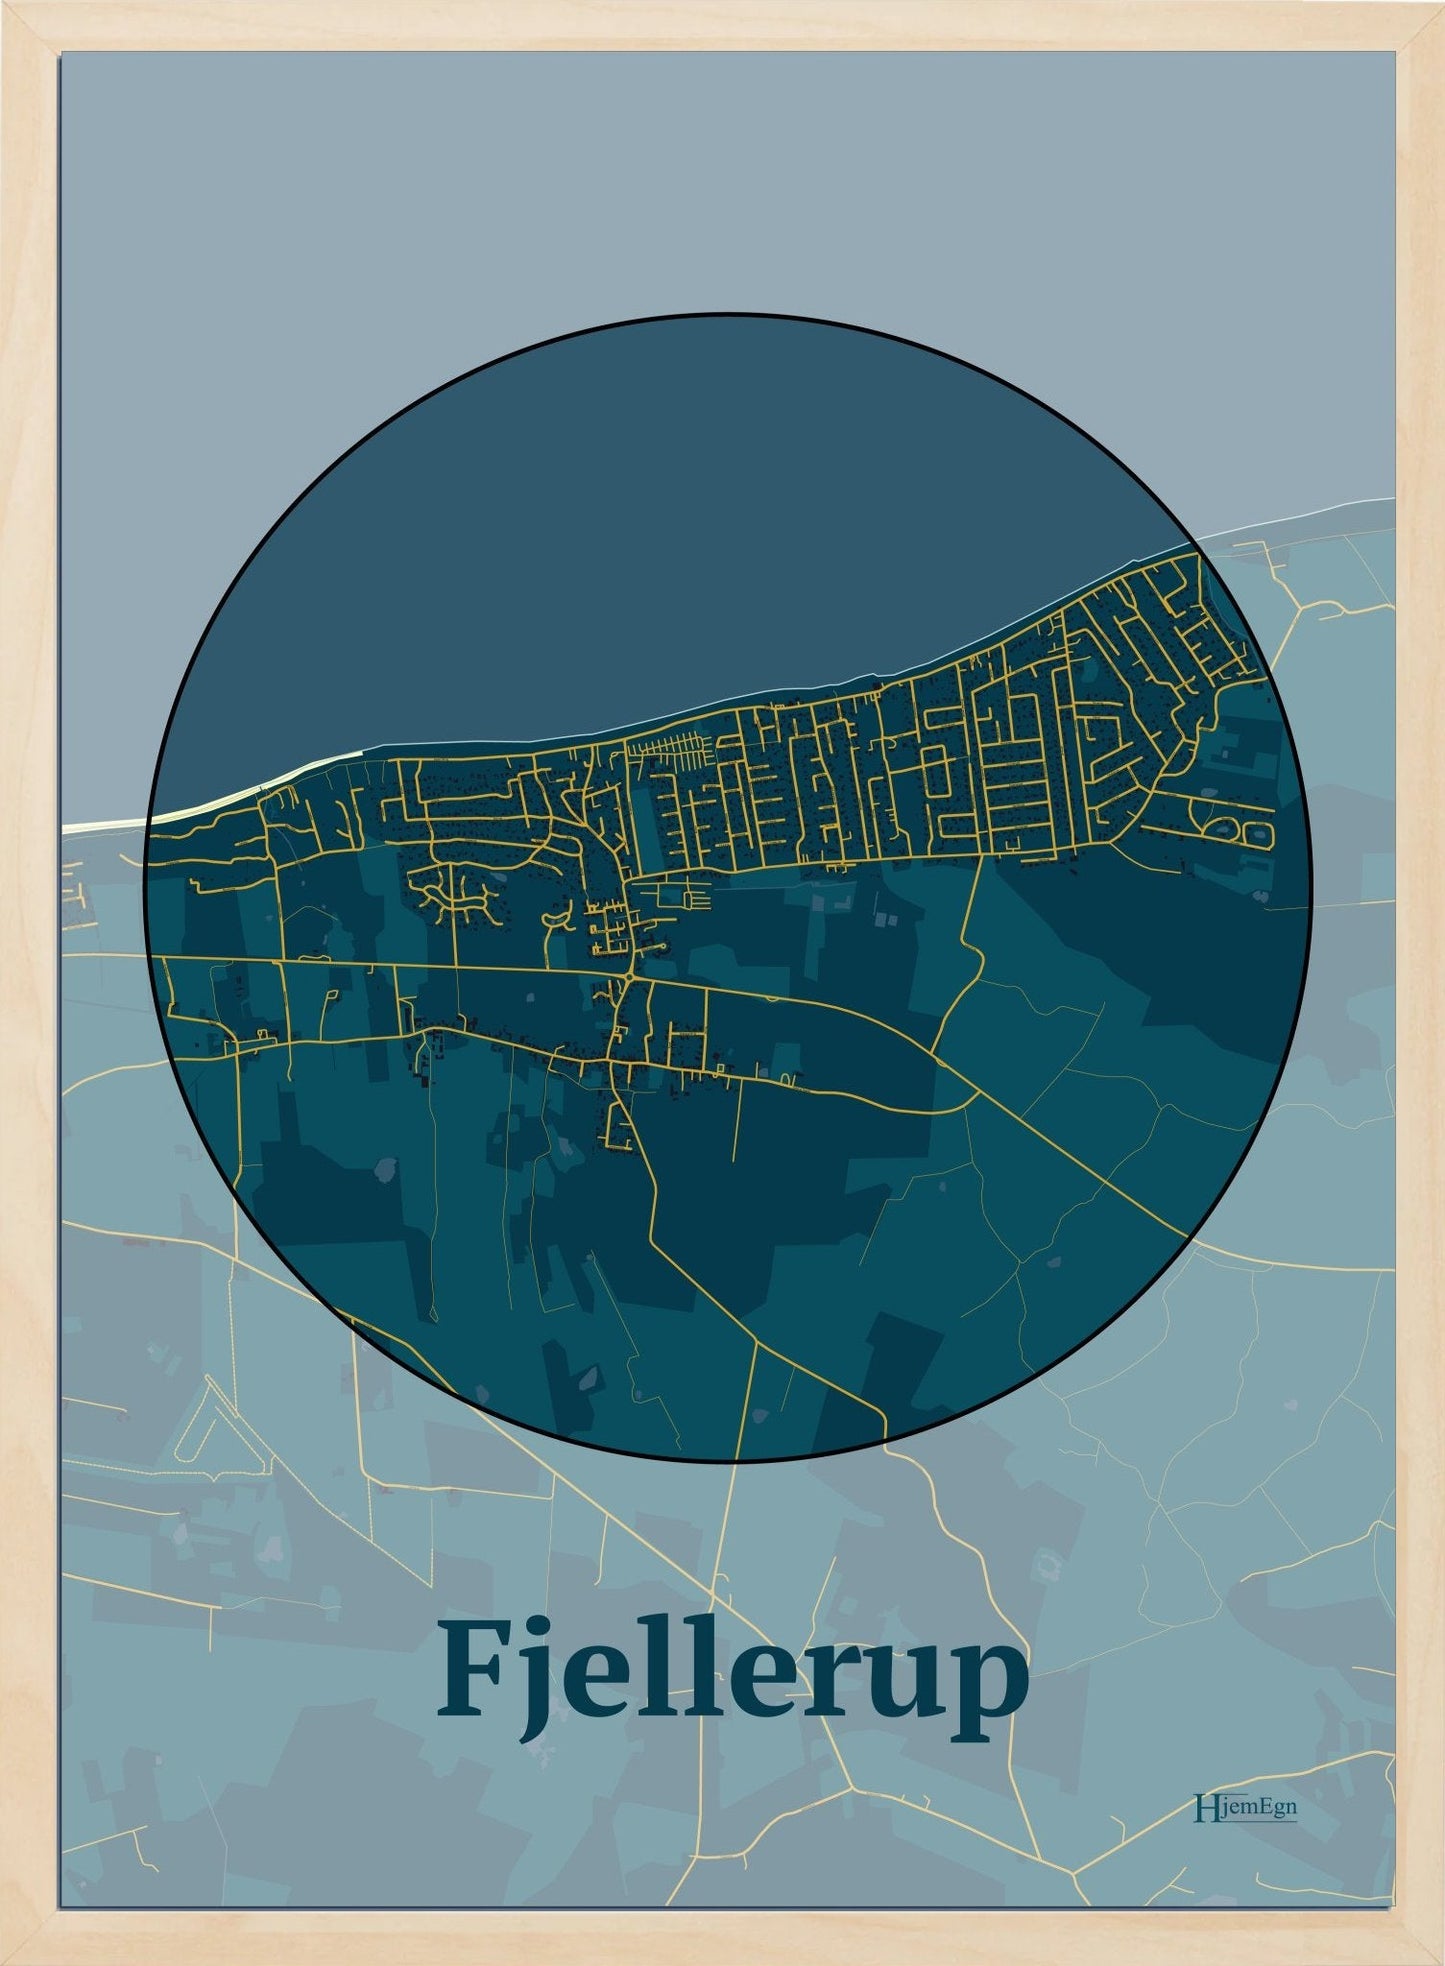 Fjellerup plakat i farve mørk blå og HjemEgn.dk design centrum. Design bykort for Fjellerup